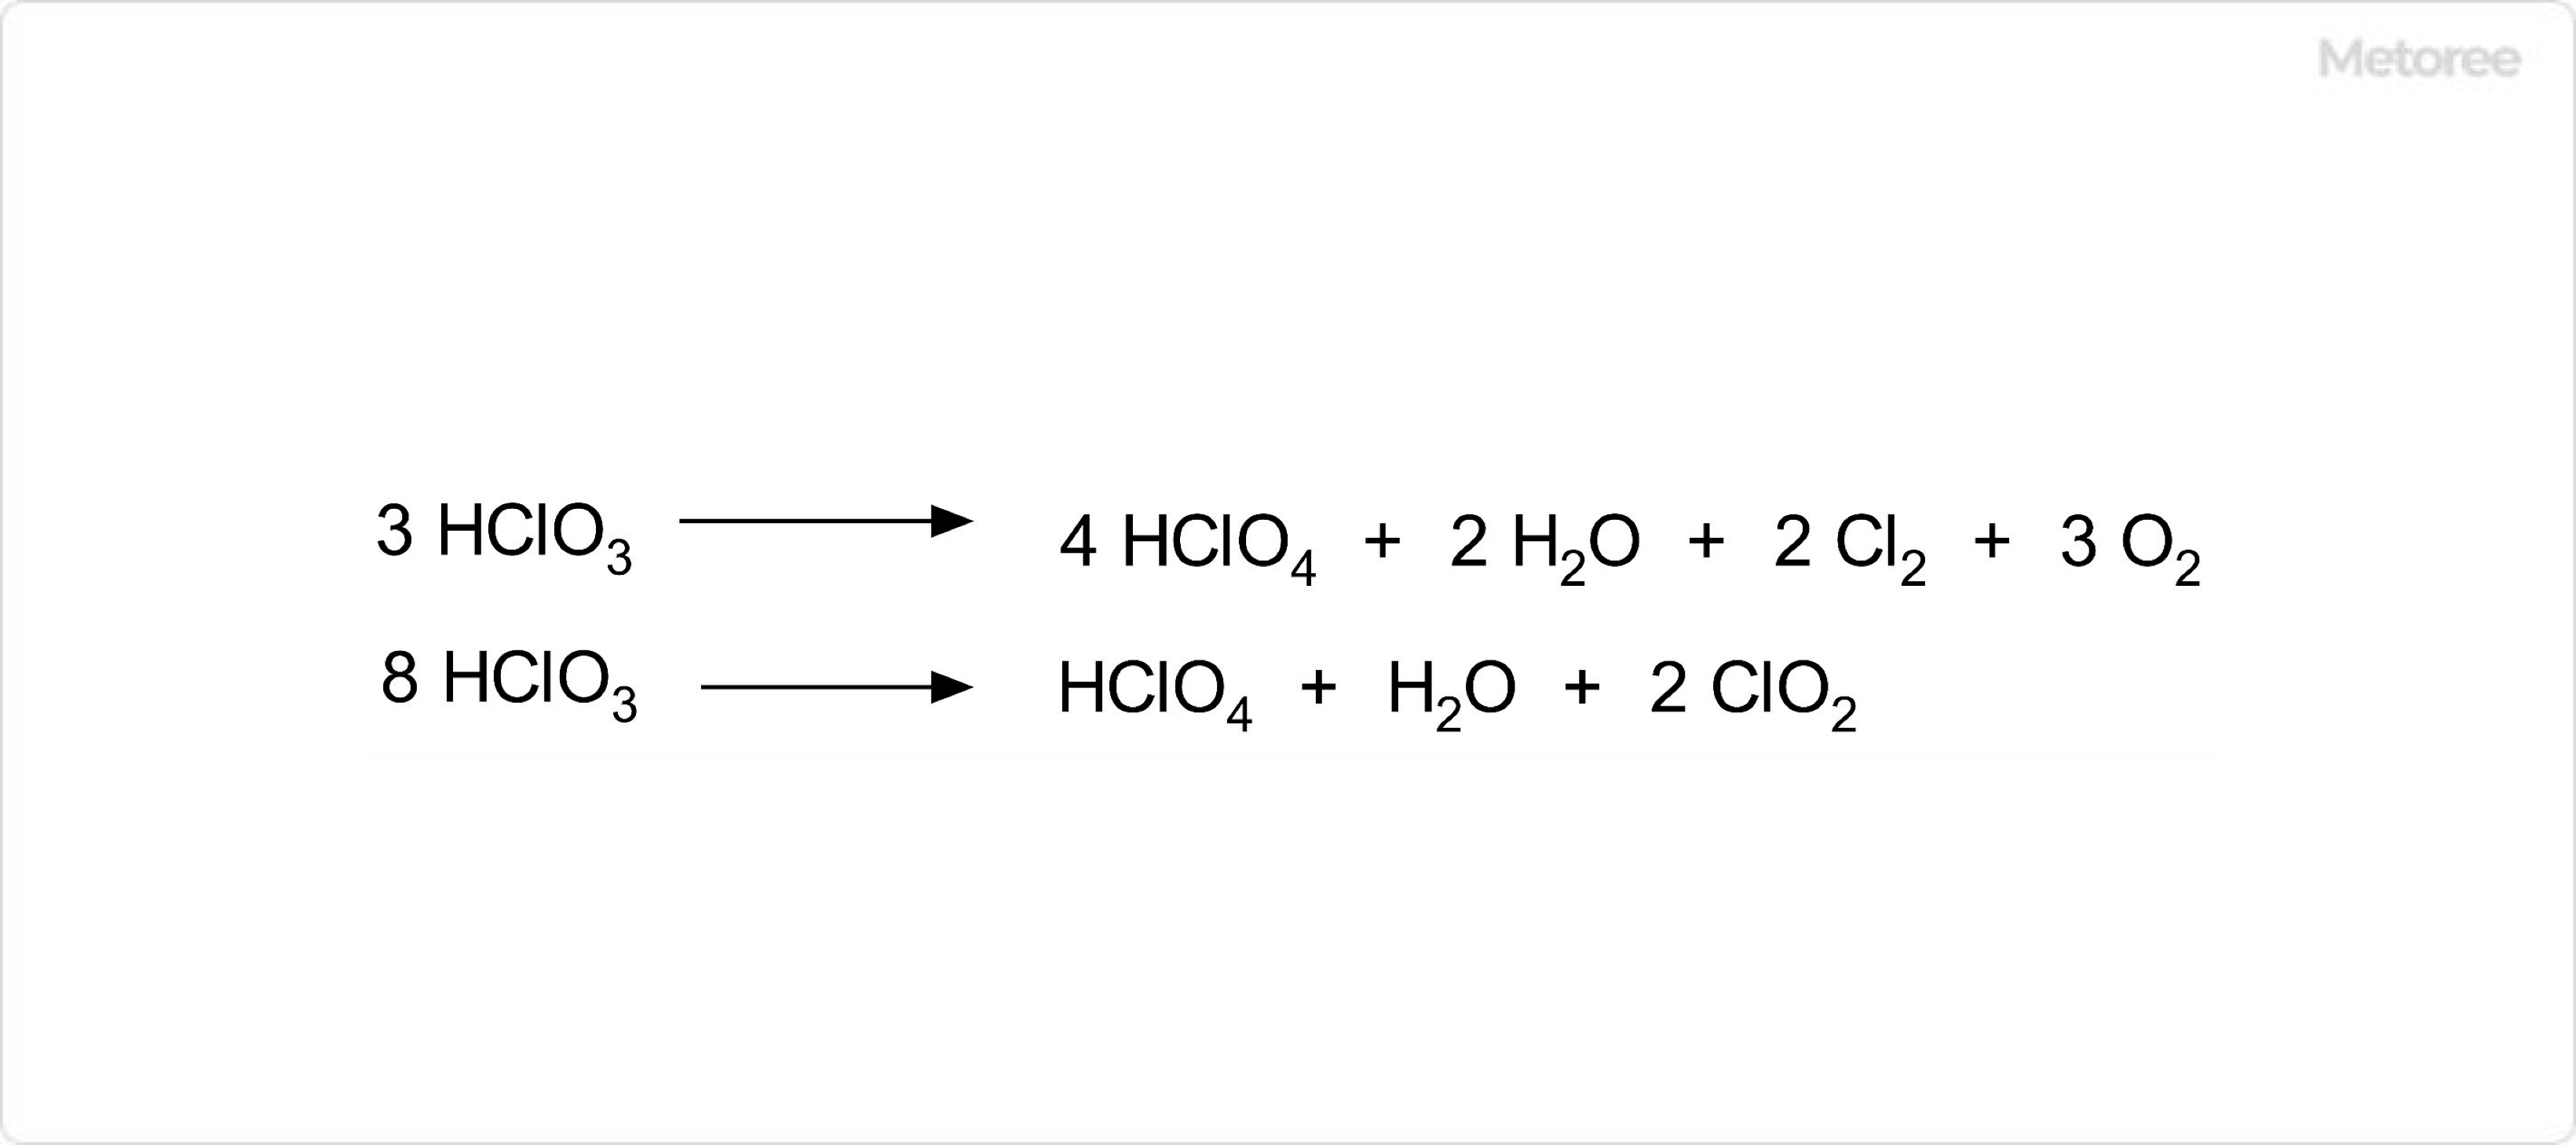 塩素酸の分解反応 (1)